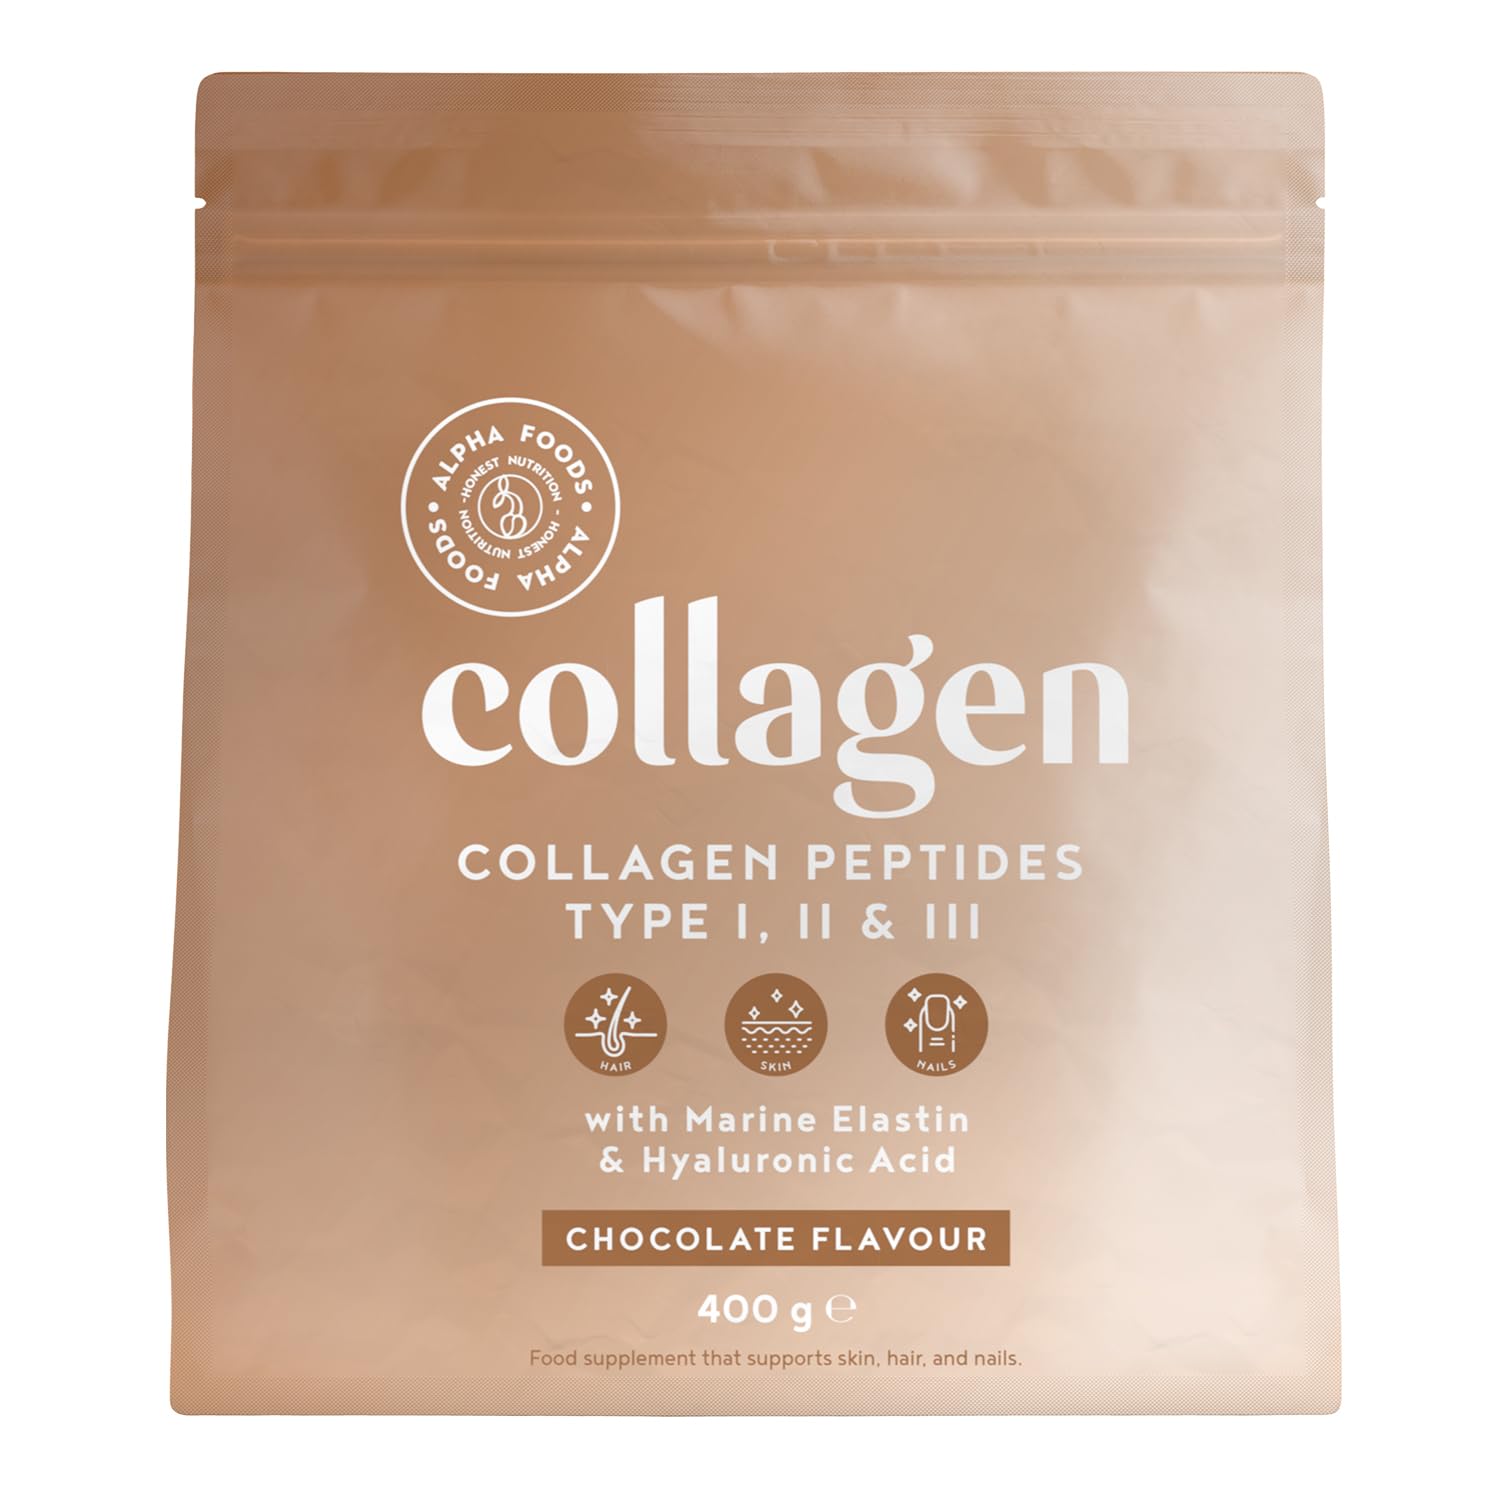 Alpha Foods Collagen Pulver (400g) - Kollagen Hydrolysat Peptide Type I, II & III - Hochdosiert Kollagenpulver mit Hyaluronsäure und Elastin - Schokoladengeschmack - Aus Deutschland